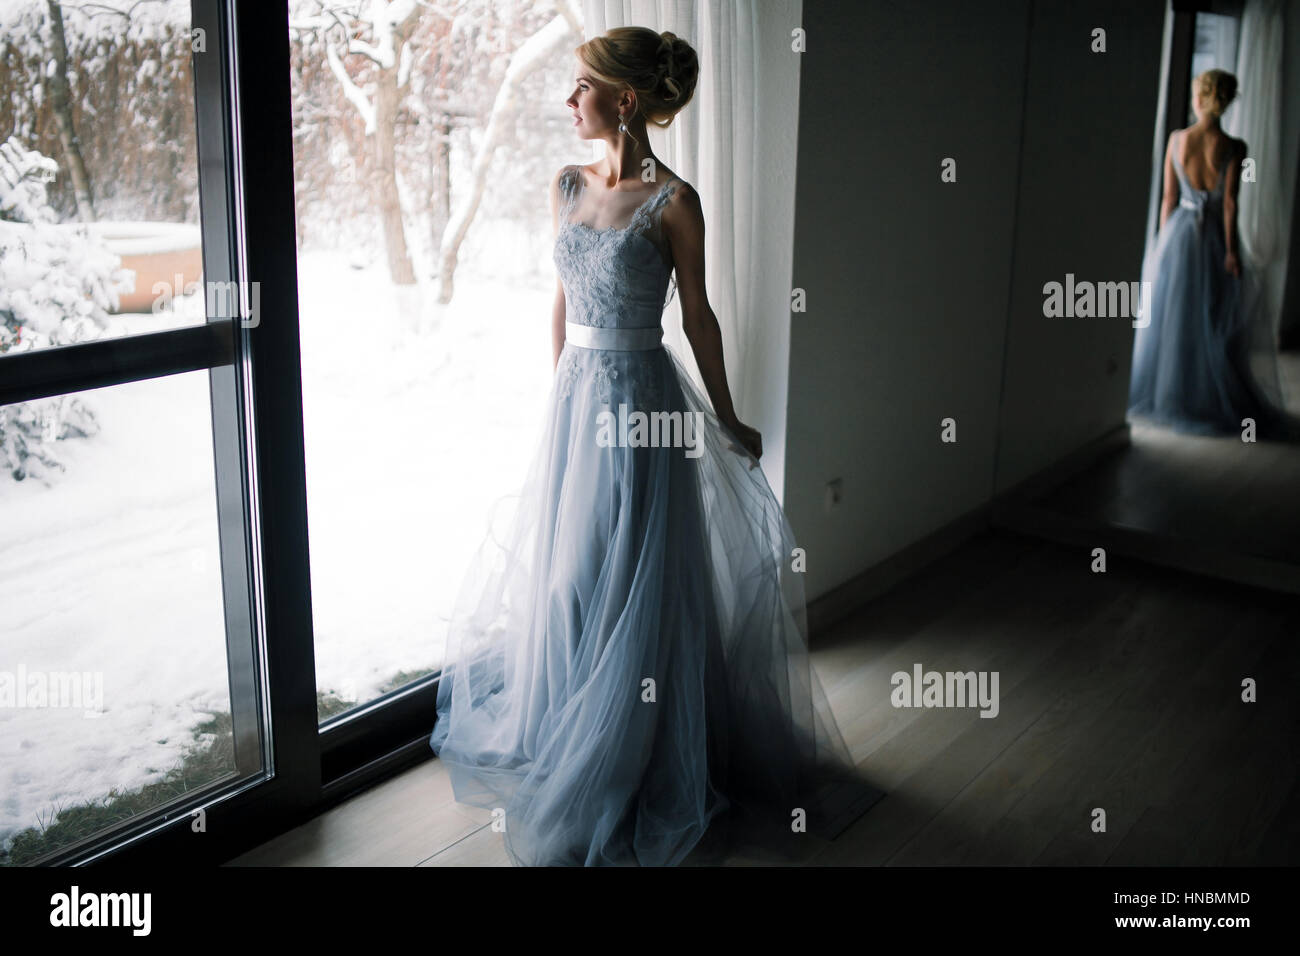 Braut, stehen vor großen Fenster und blickte zum verschneiten Garten. Ihre Figur spiegelt sich in den großen Spiegel. Stockfoto